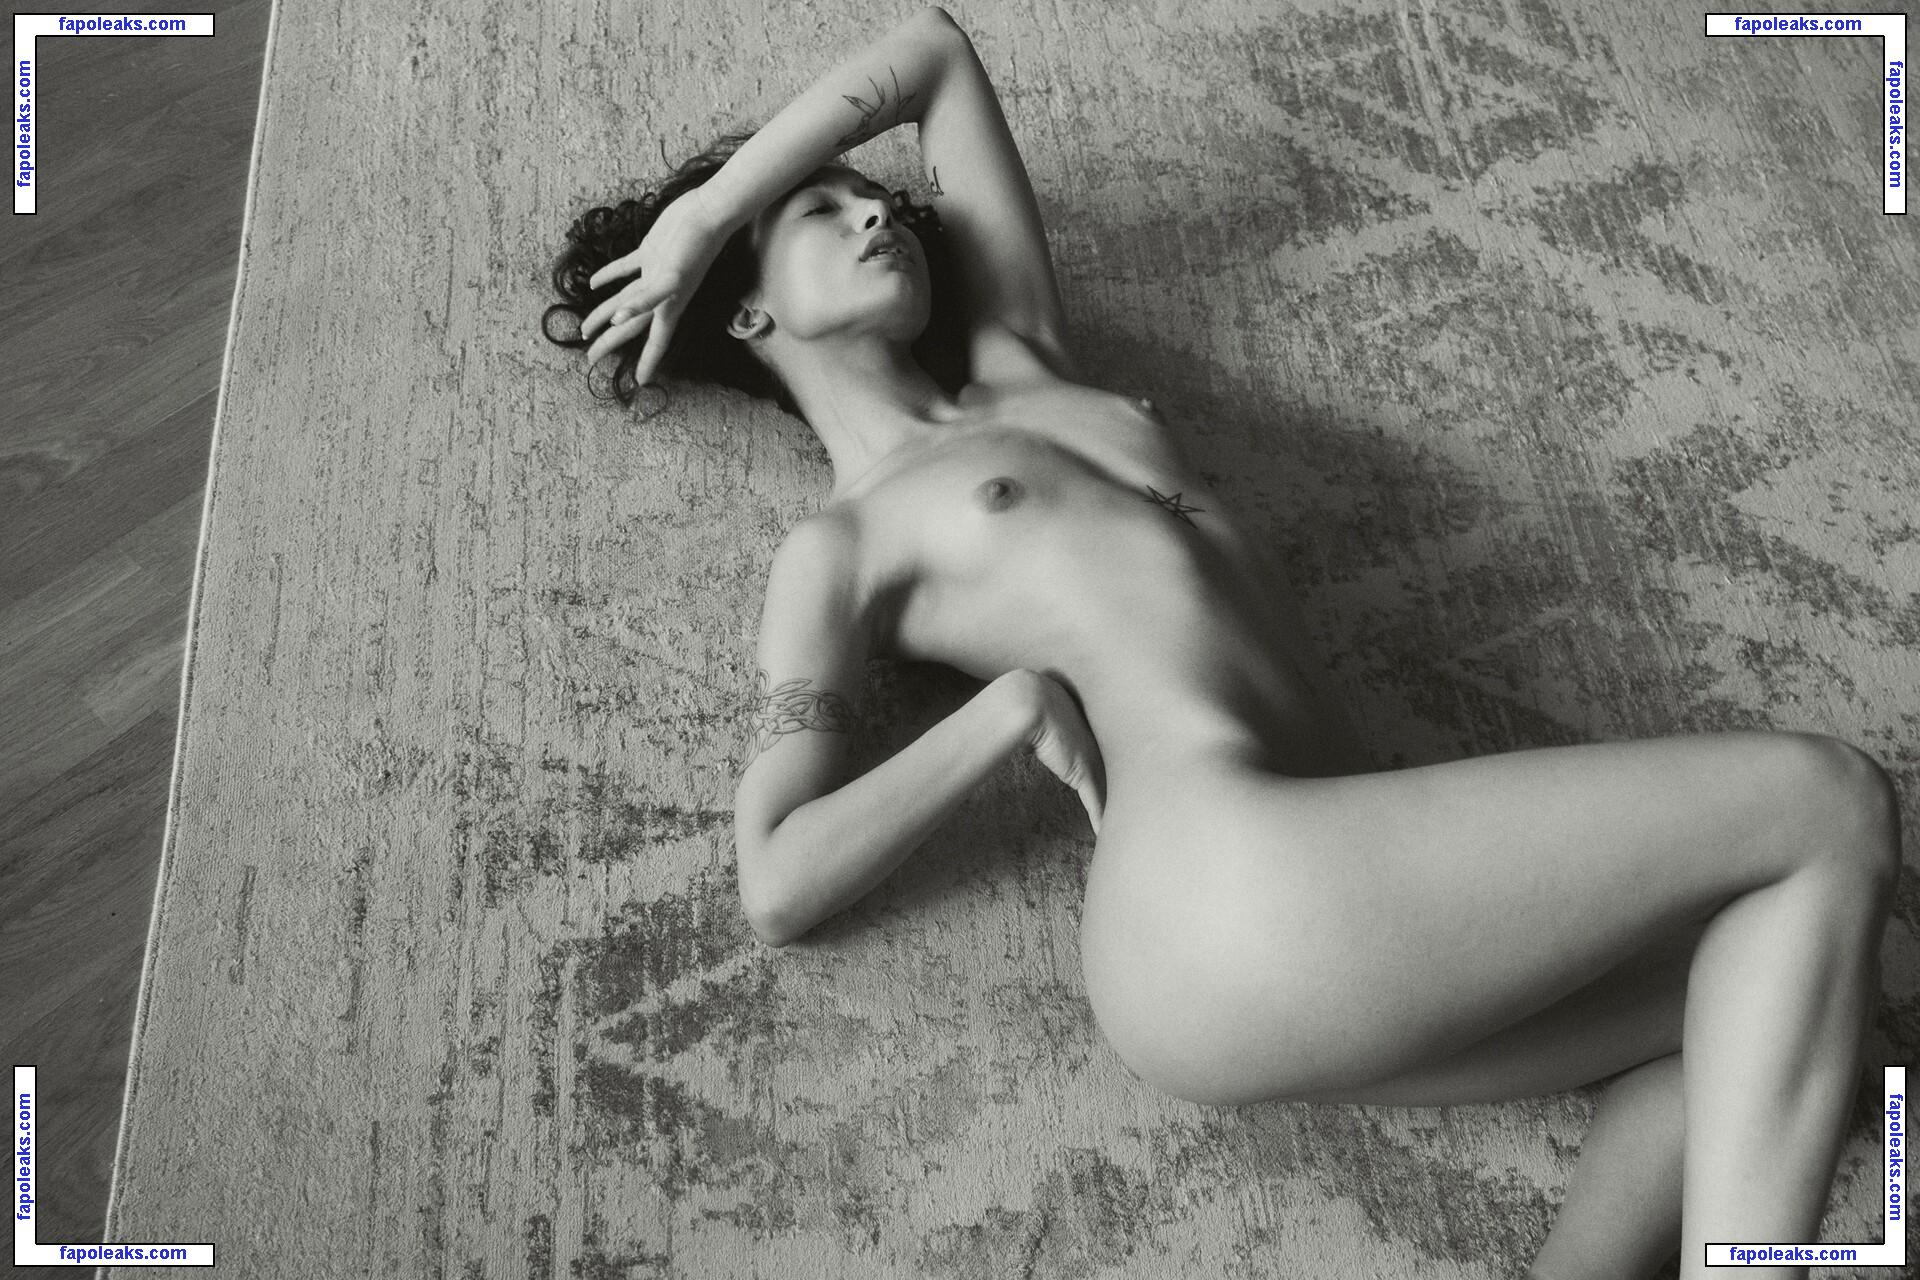 Nikol Beylik / Lily Hayjes / Wandaweb / nikolxxnikol / pronixyy nude photo #0556 from OnlyFans